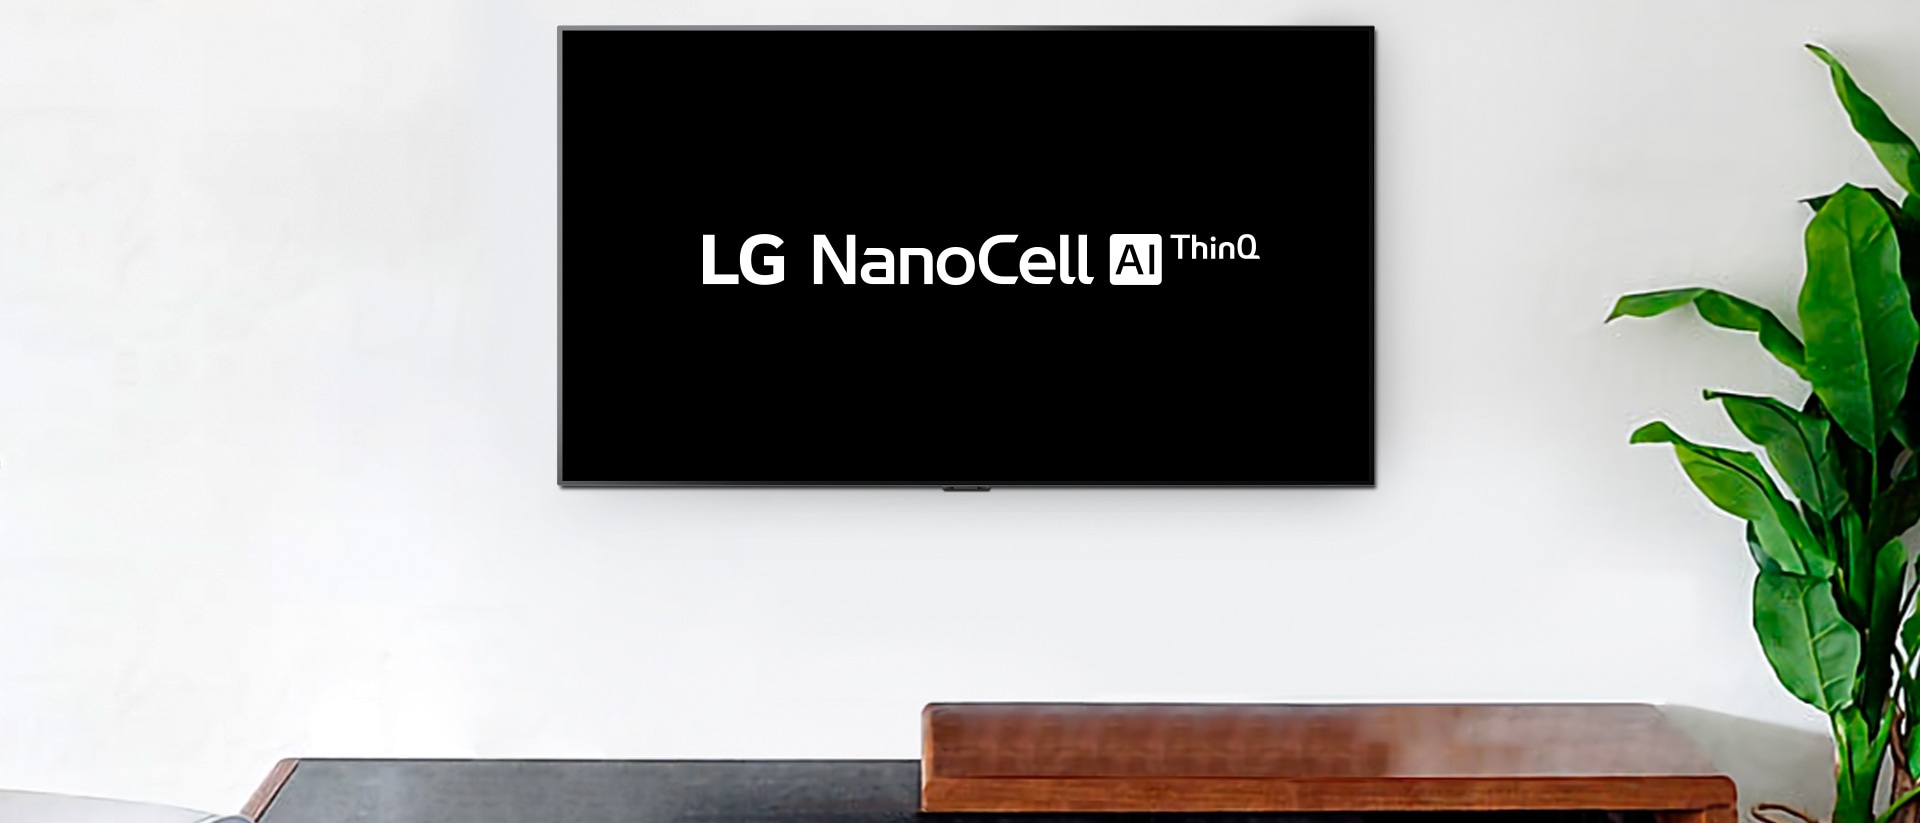 Ein an der Wand angebrachter Fernseher zeigt das Logo von LG OLED AI ThinQ vor schwarzem Hintergrund an.